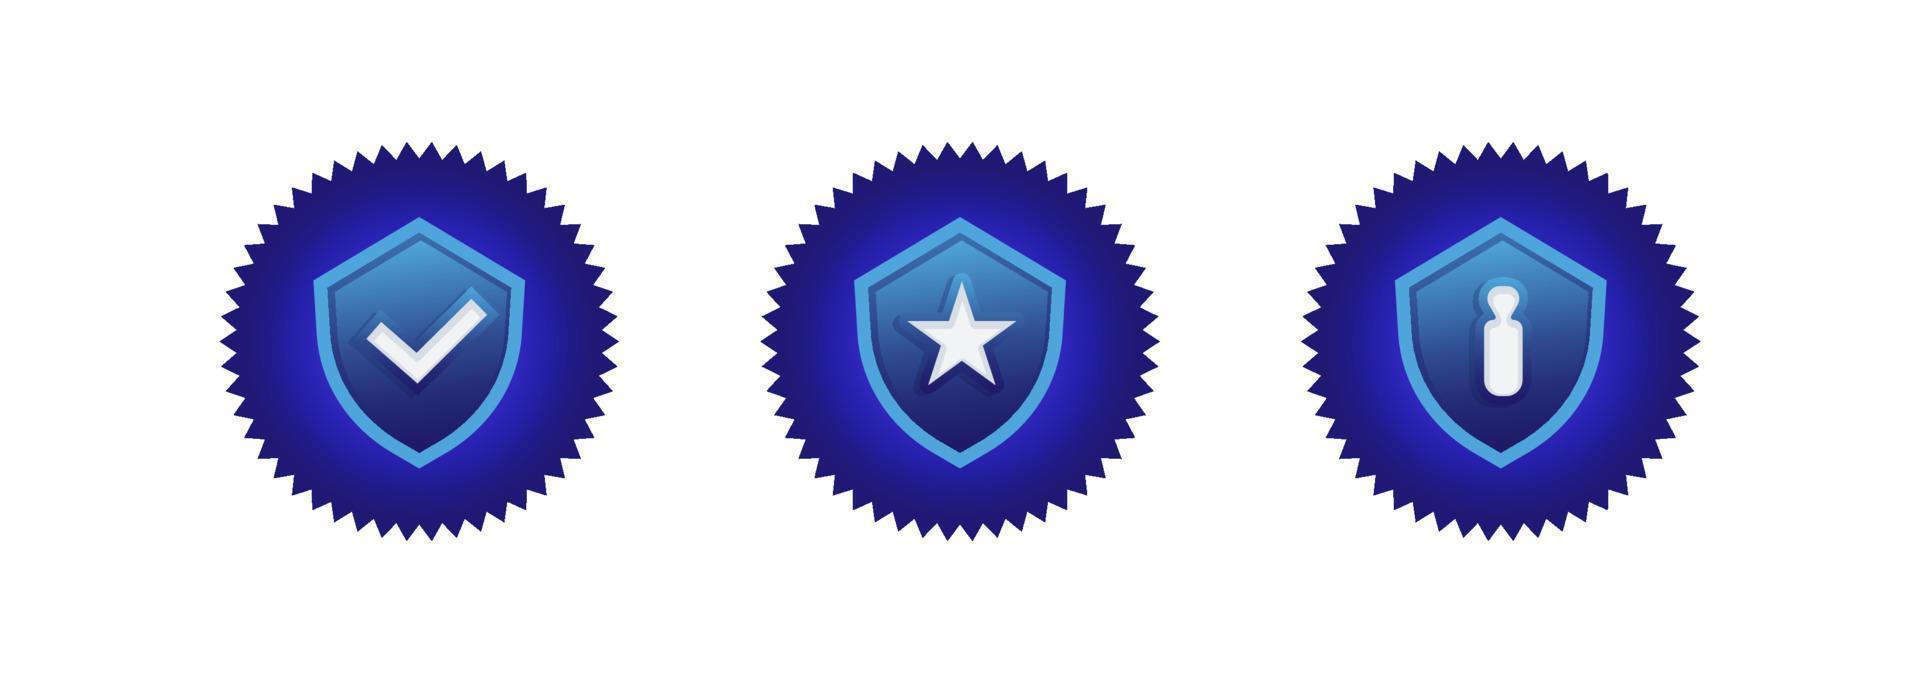 escudo de logotipo verificado seguro recomendado azul con bloqueo de lista de verificación e ilustración de insignia aislada de estrella vector